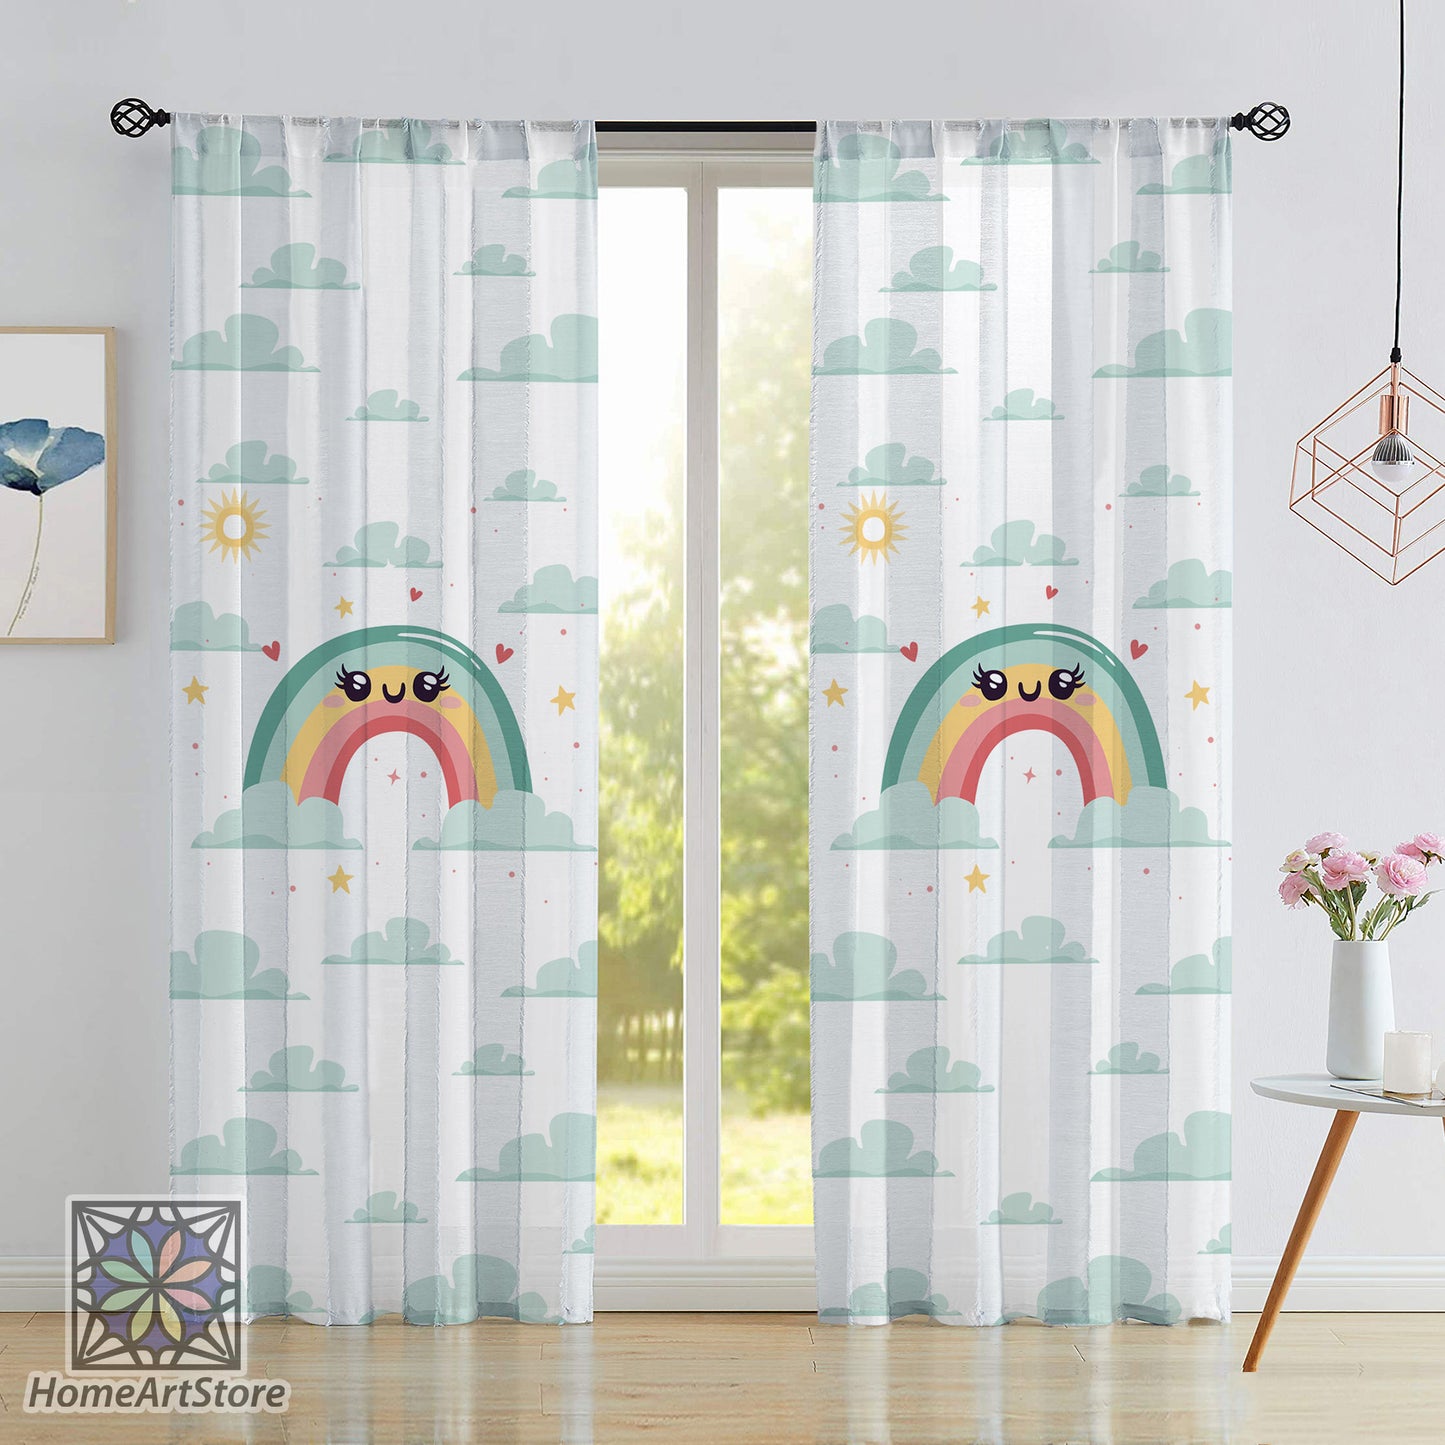 Rainbow Themed Curtain, Baby Room Curtain, Cloud Pattern Curtain, Children Room Curtain, Baby Gift